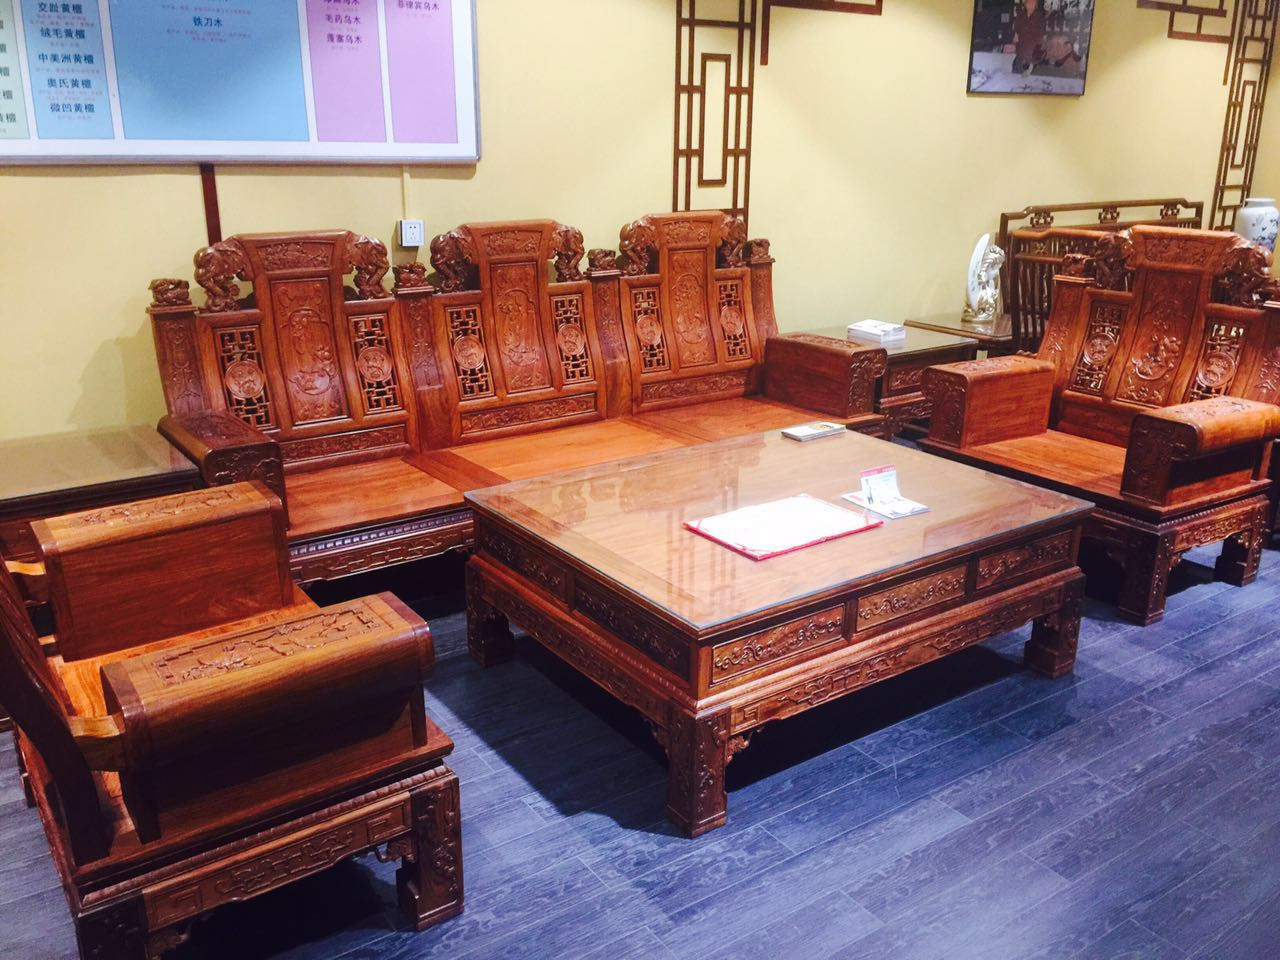 中国古典式红木家具客厅6件套 大吉祥沙发组合